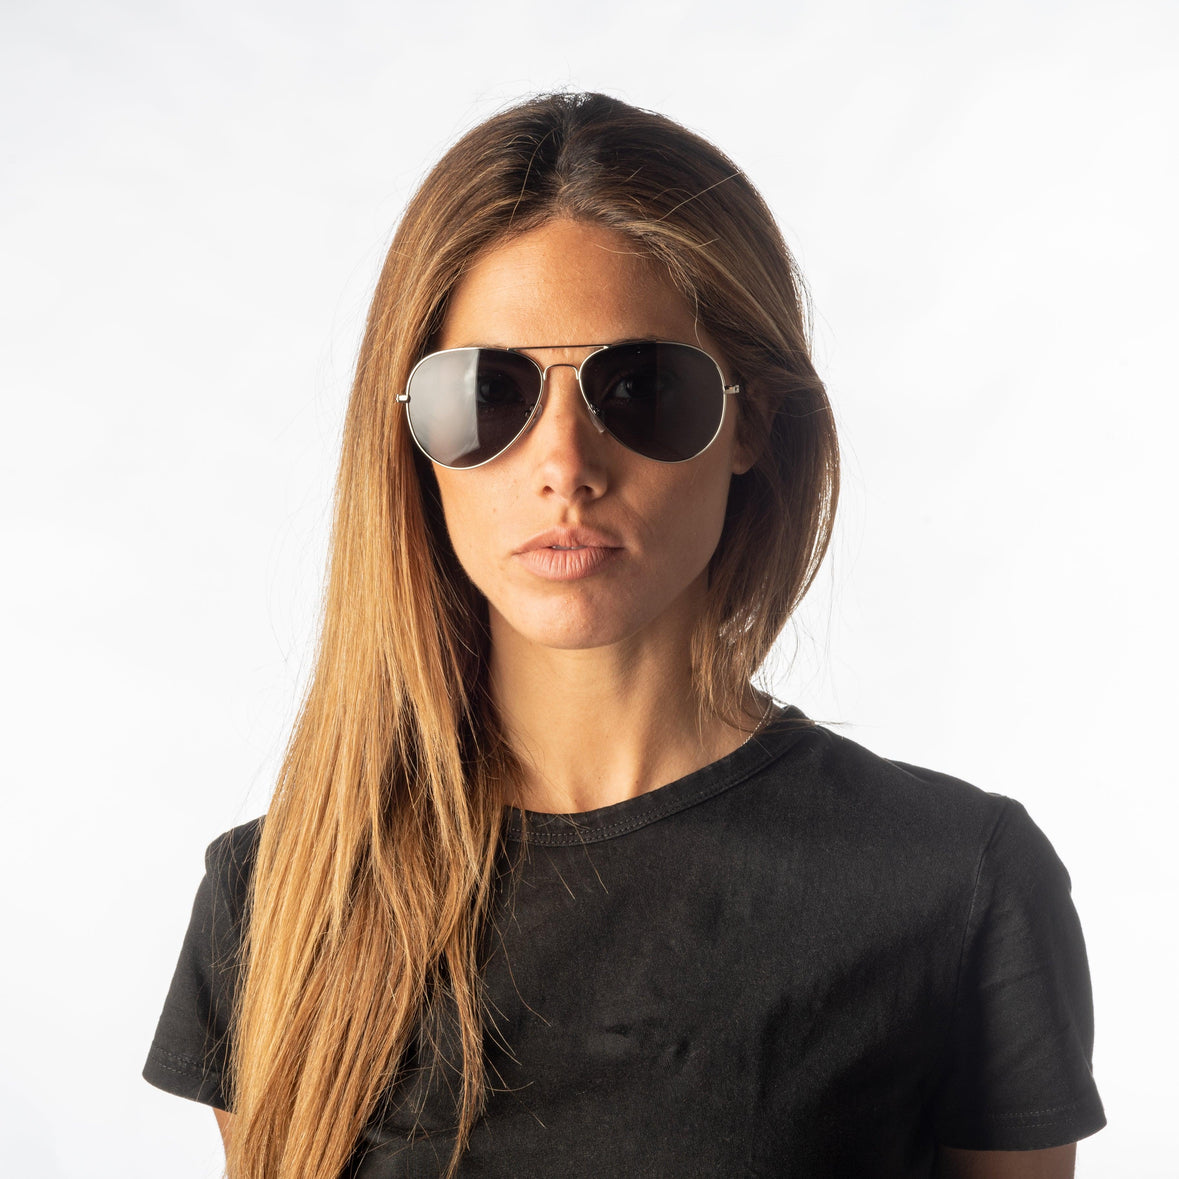 Sport shield sunglasses, Simons, Shop Women's Sunglasses Under $50 Online